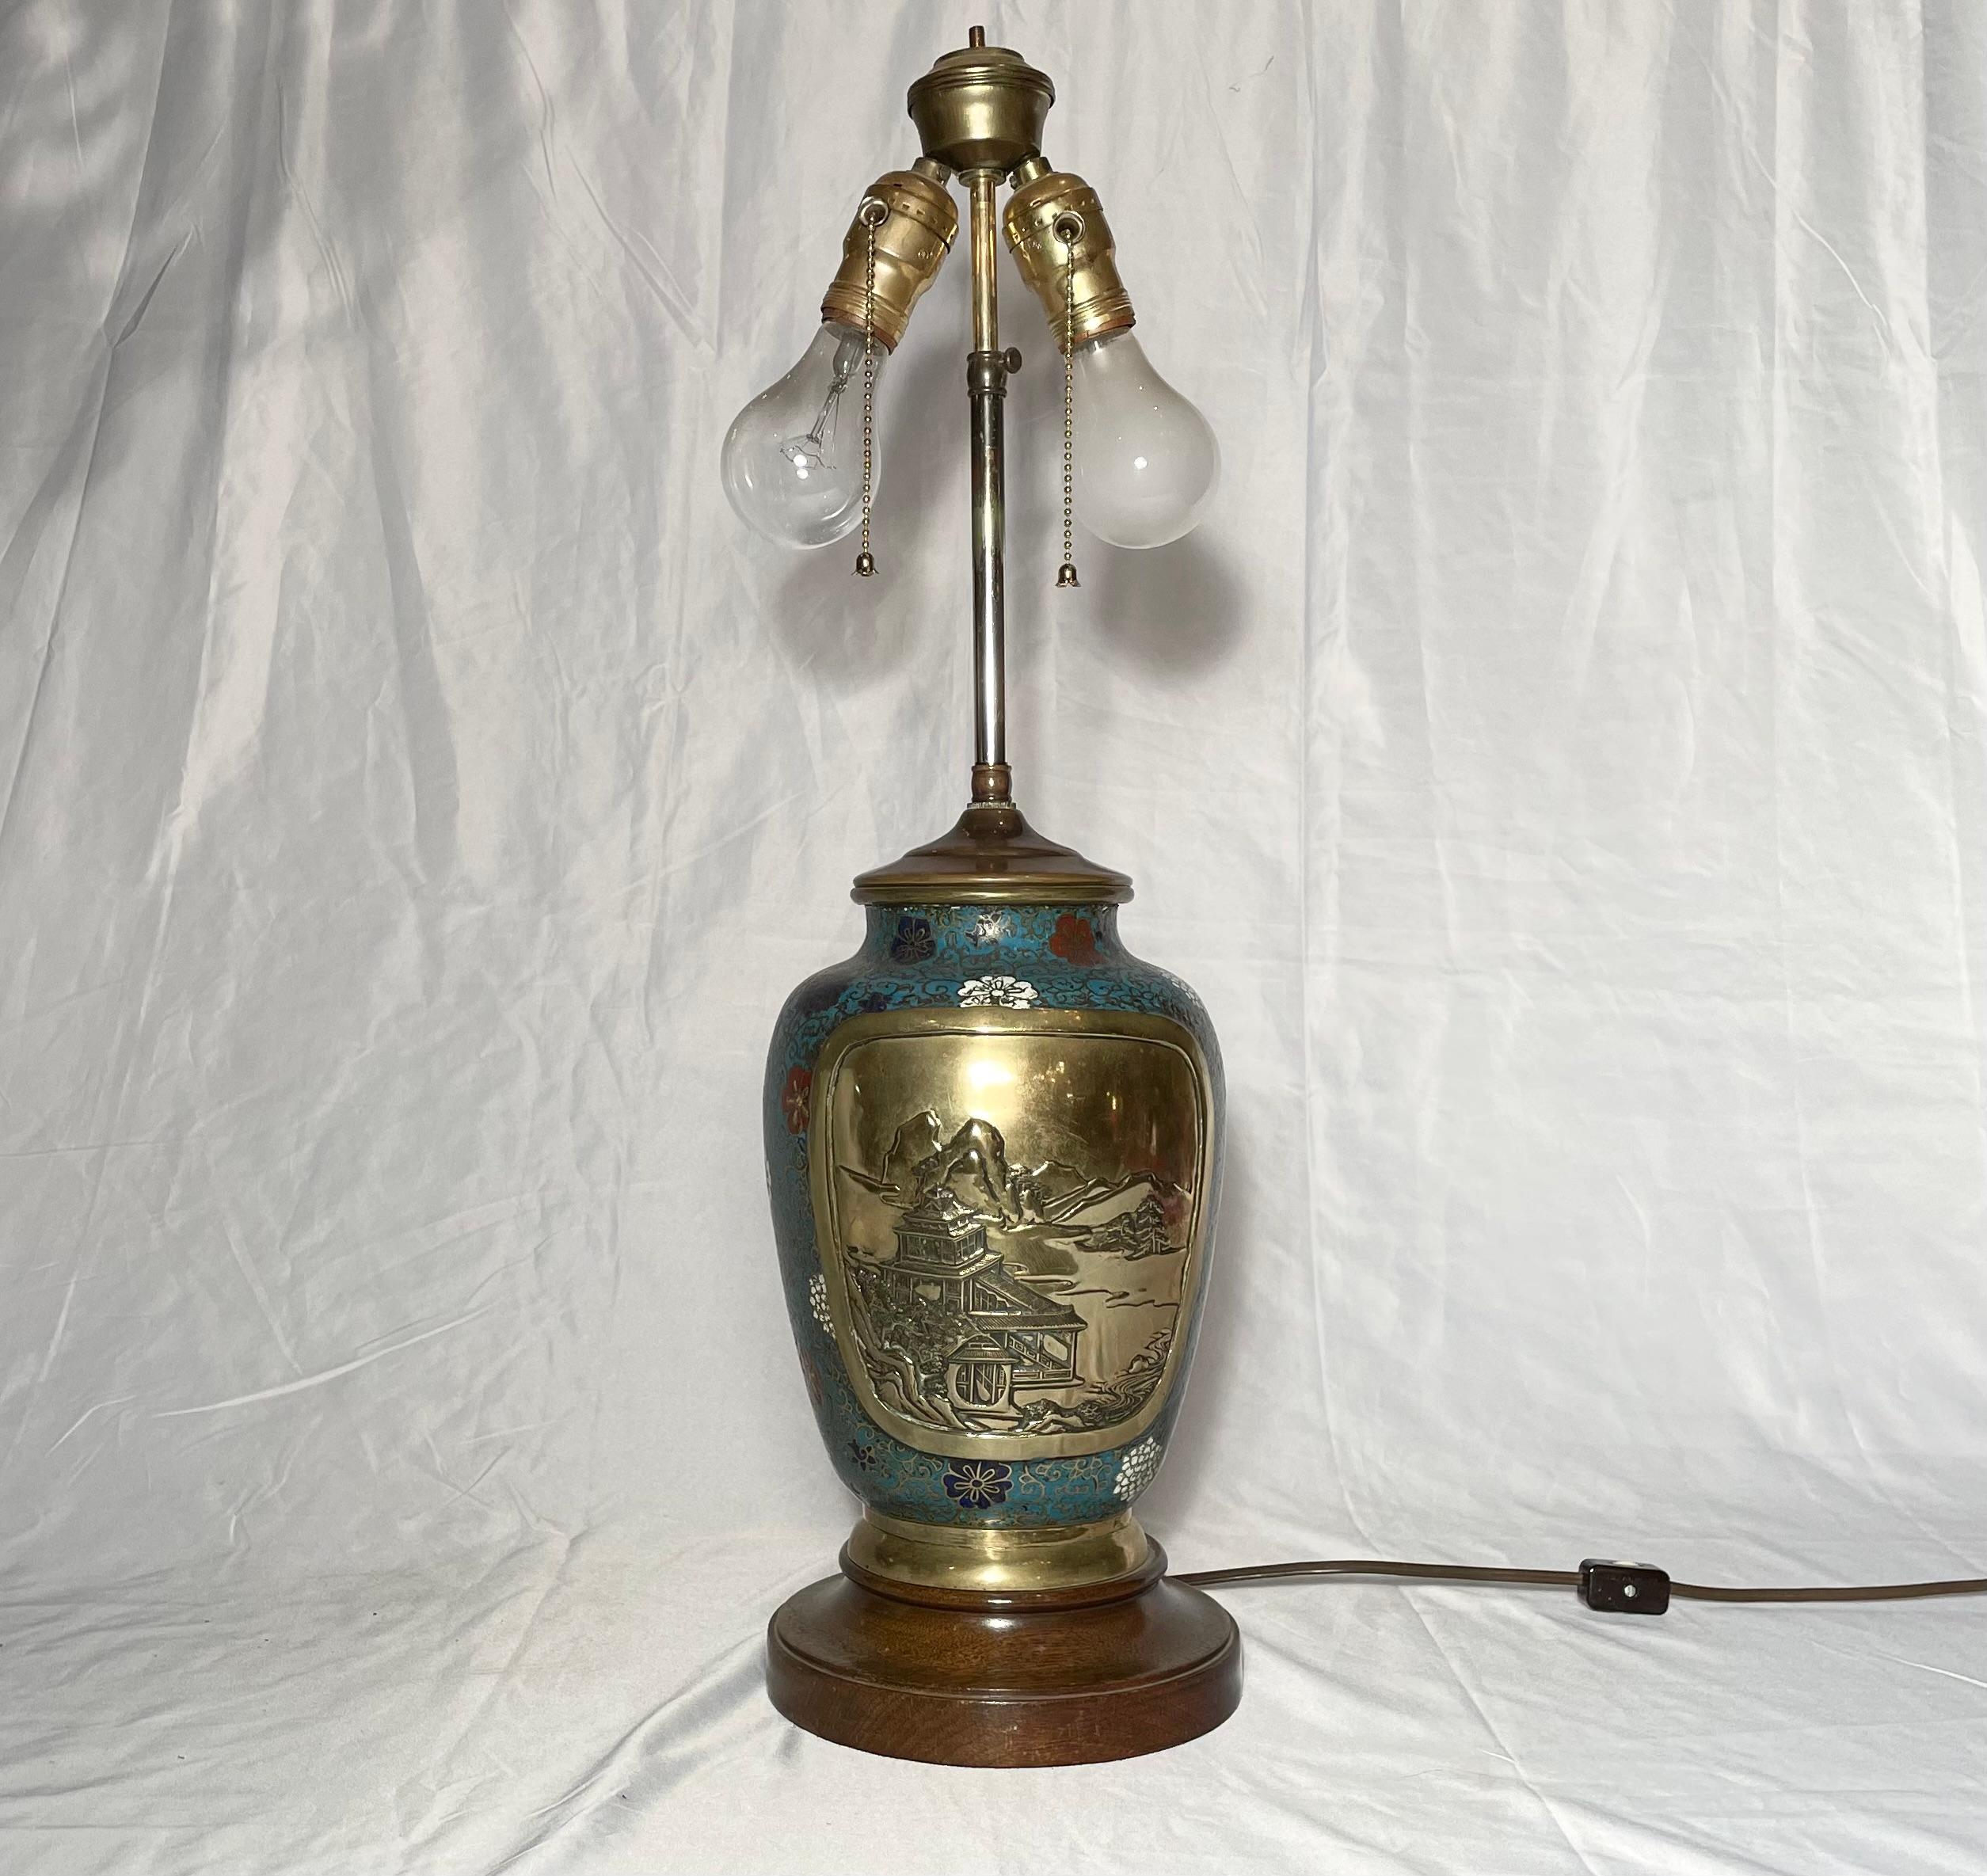 Urne Cloissoné ancienne du 19e siècle transformée en lampe.